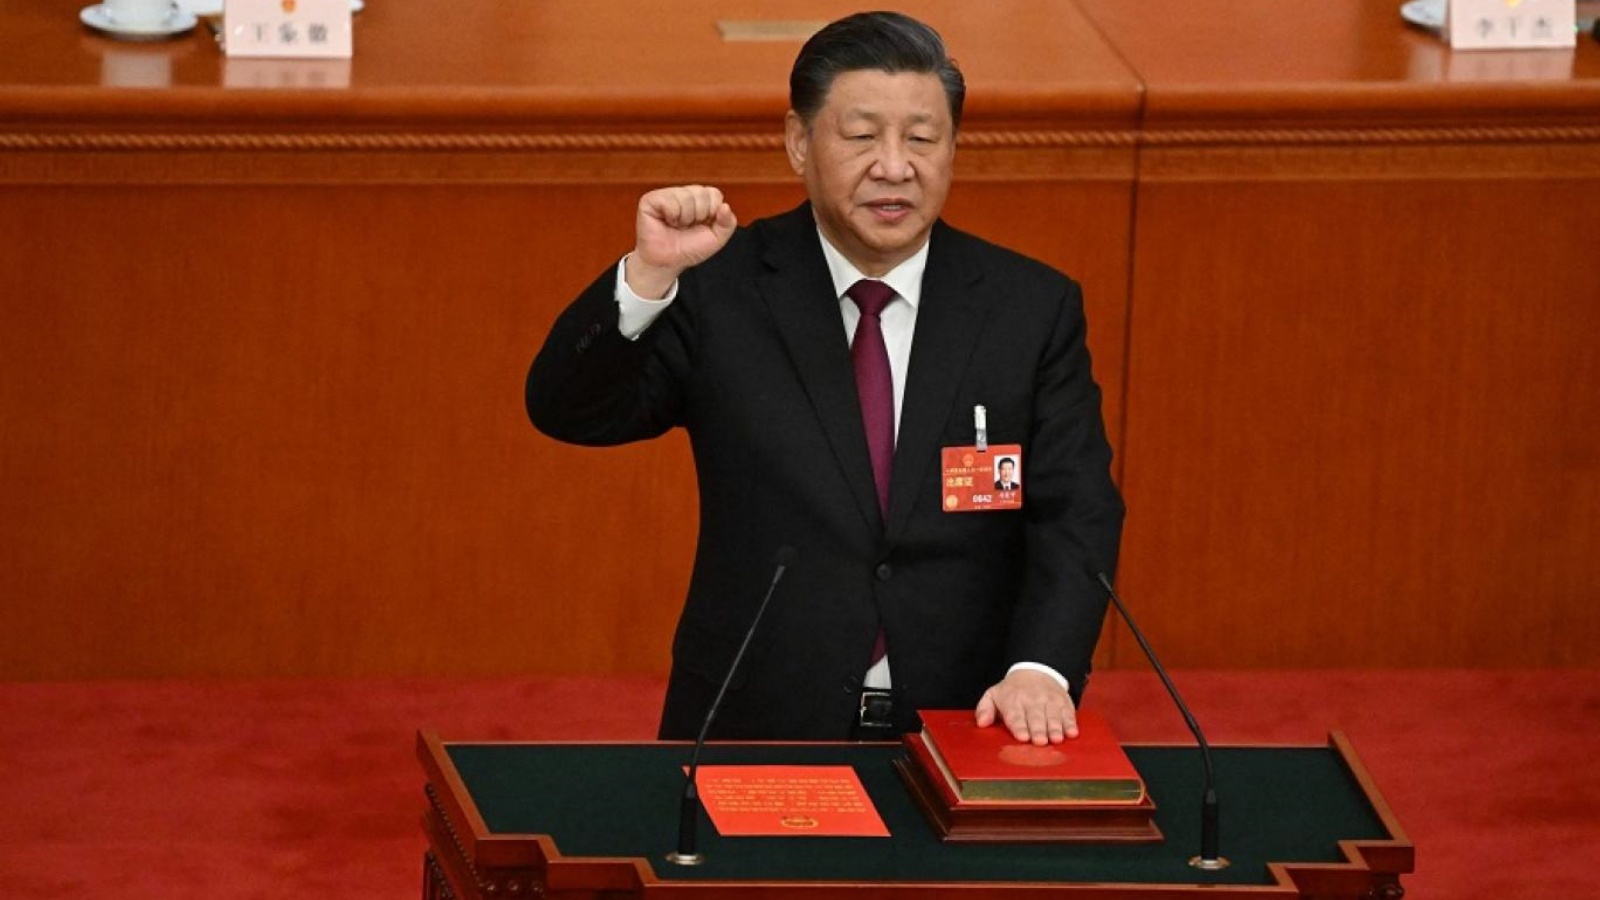 إعادة انتخاب شي جينبينغ رئيساً للصين لولاية ثالثة غير مسبوقة